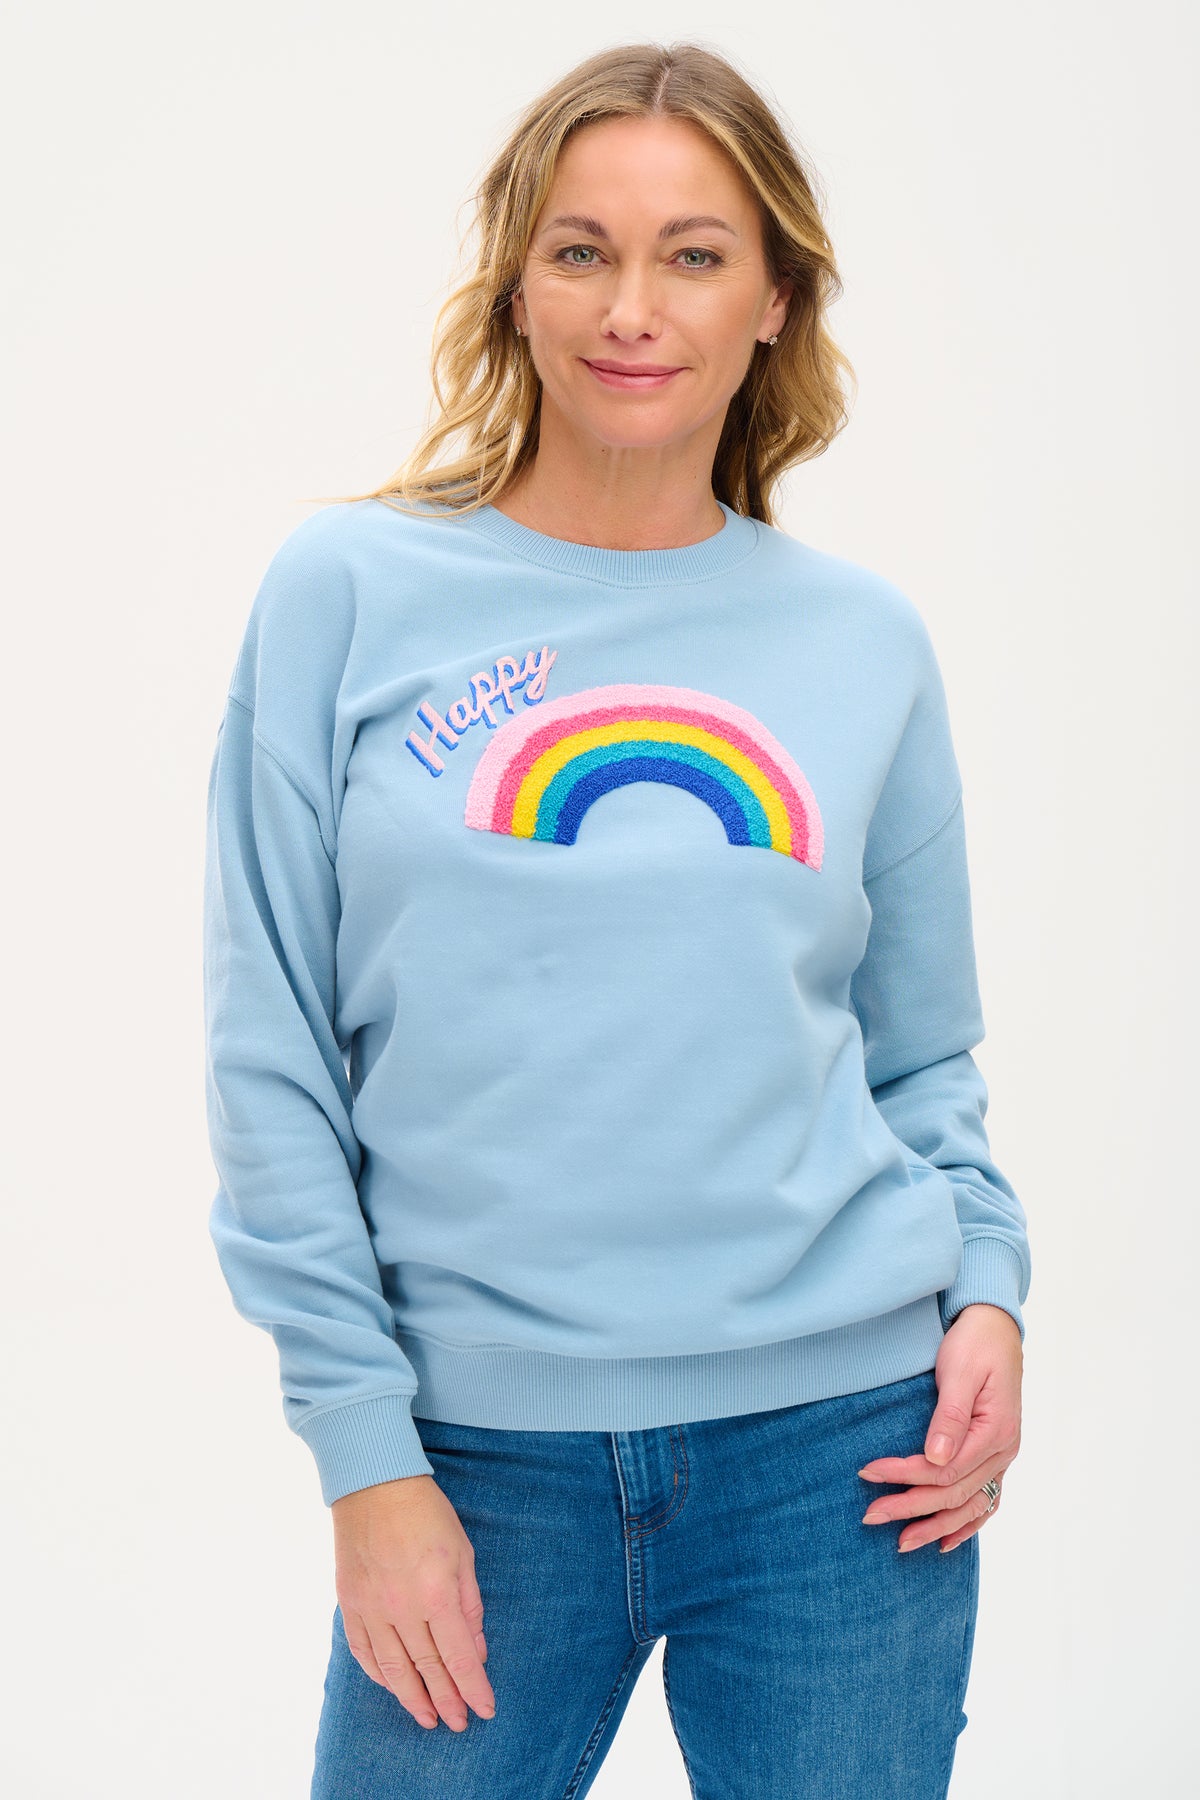 SUGARHILL-BRIGHTON-NOAH-SWEATSHIRT-Pullover-dusky-blue-happy-rainbow4